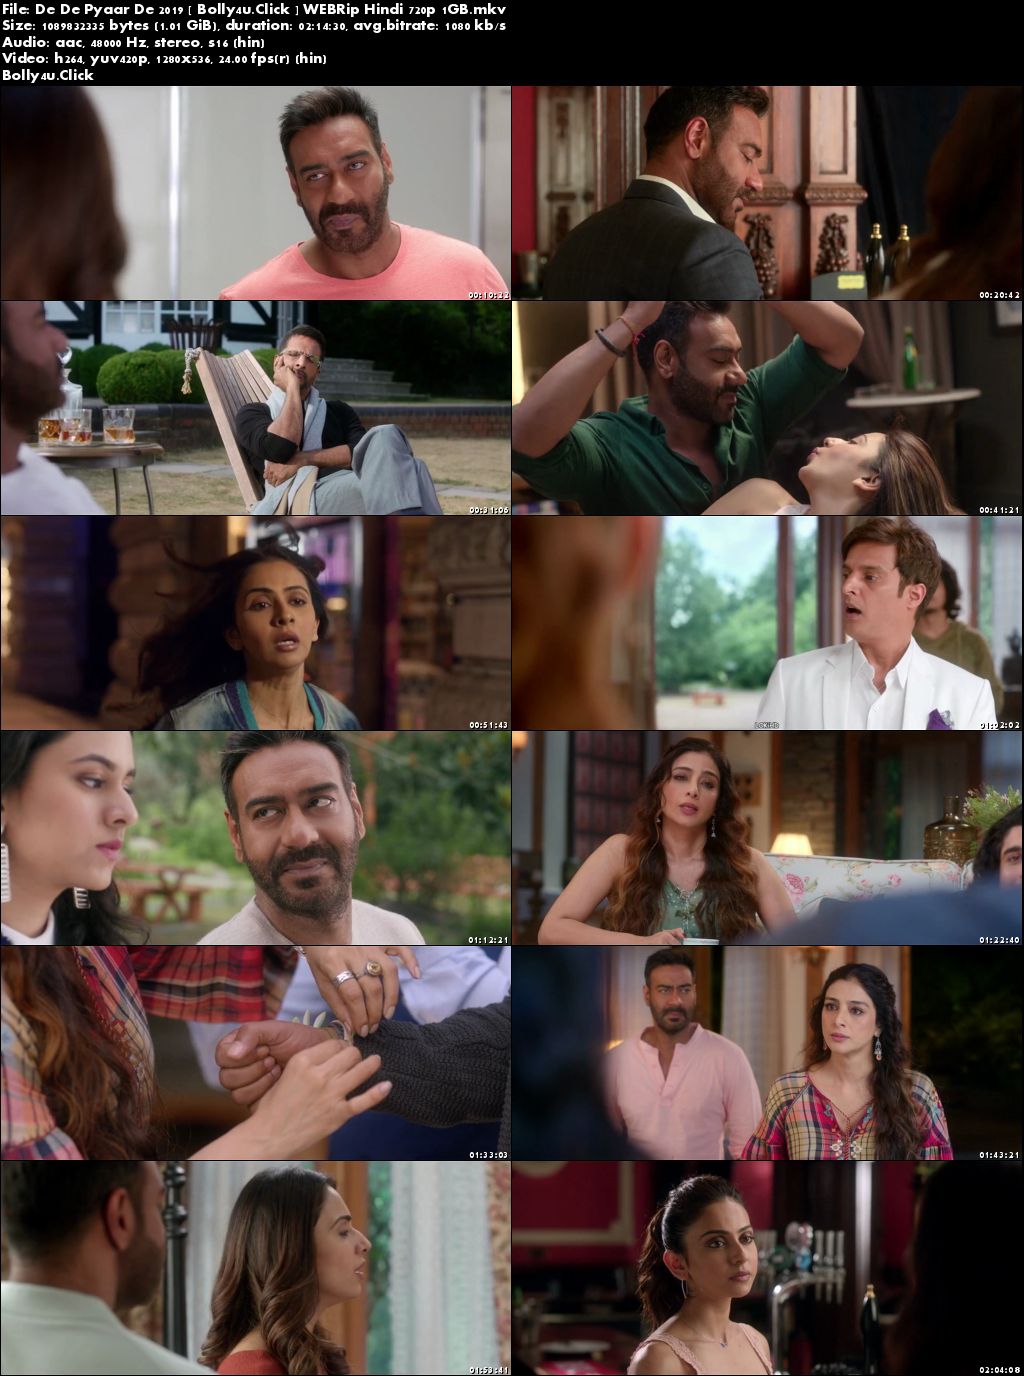 De De Pyaar De 2019 WEBRip 1GB Full Hindi Movie Download 720p